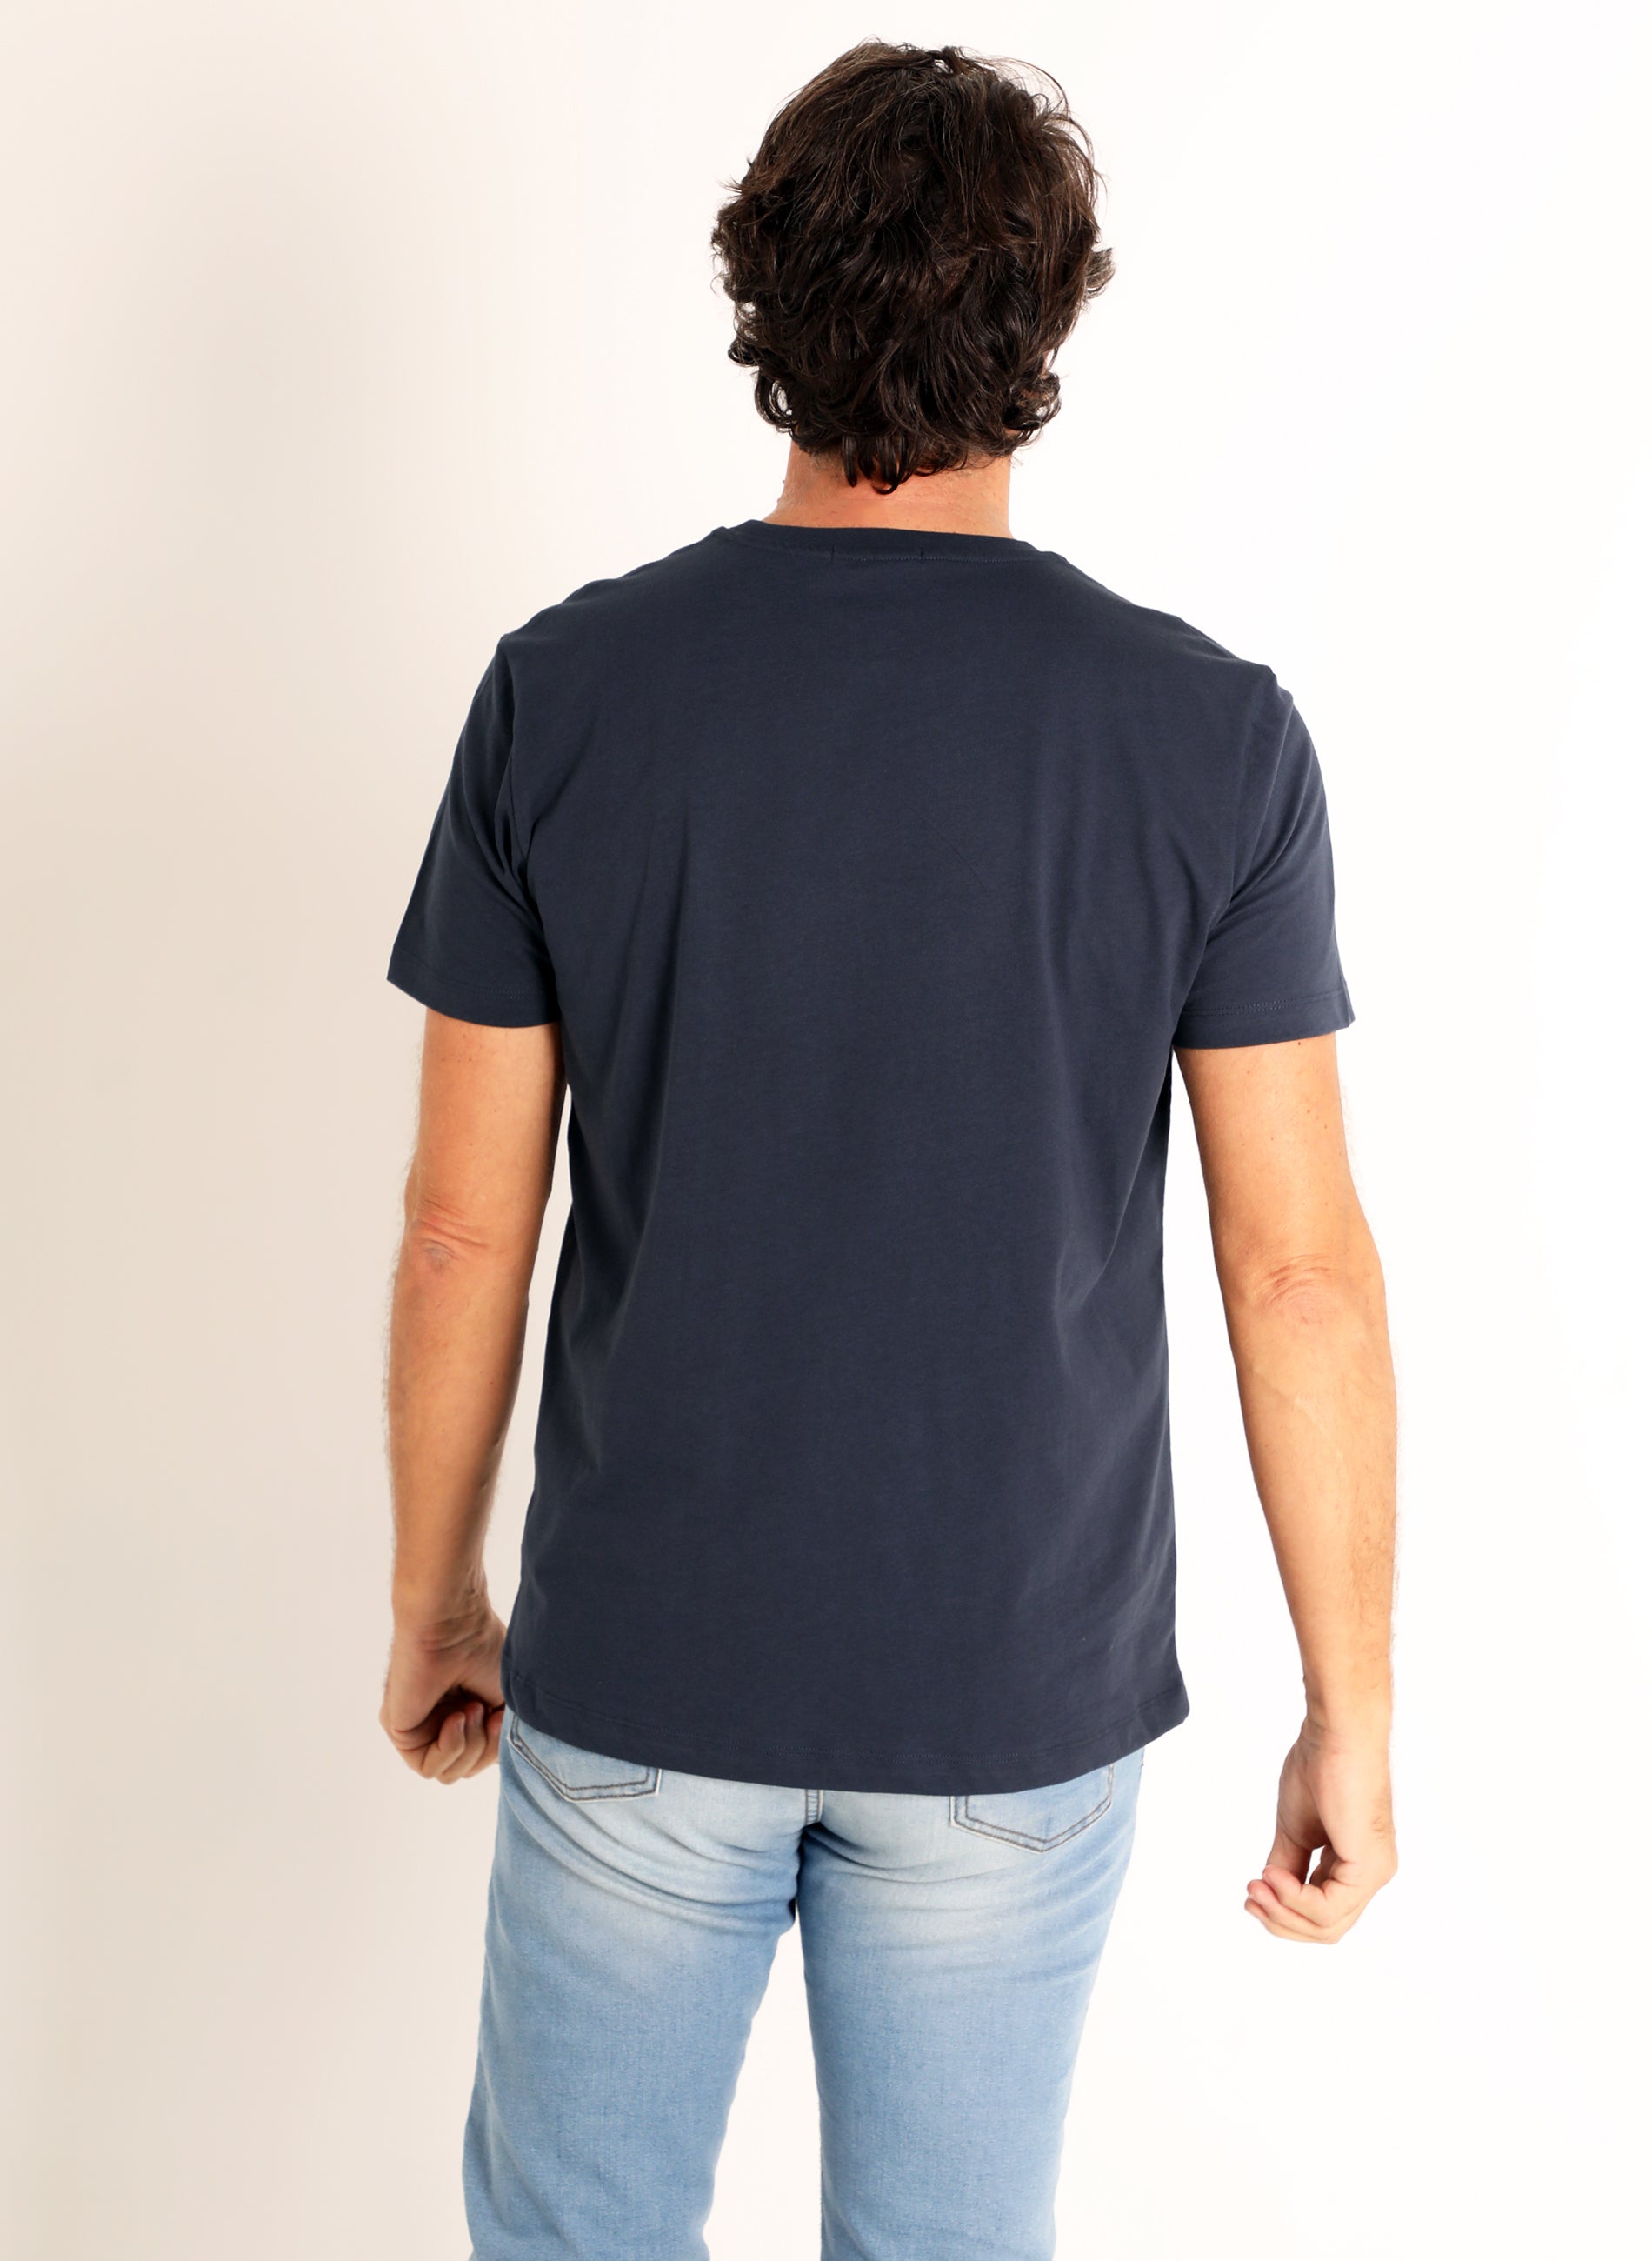 Blas de Lezo T-shirt Blue Spain